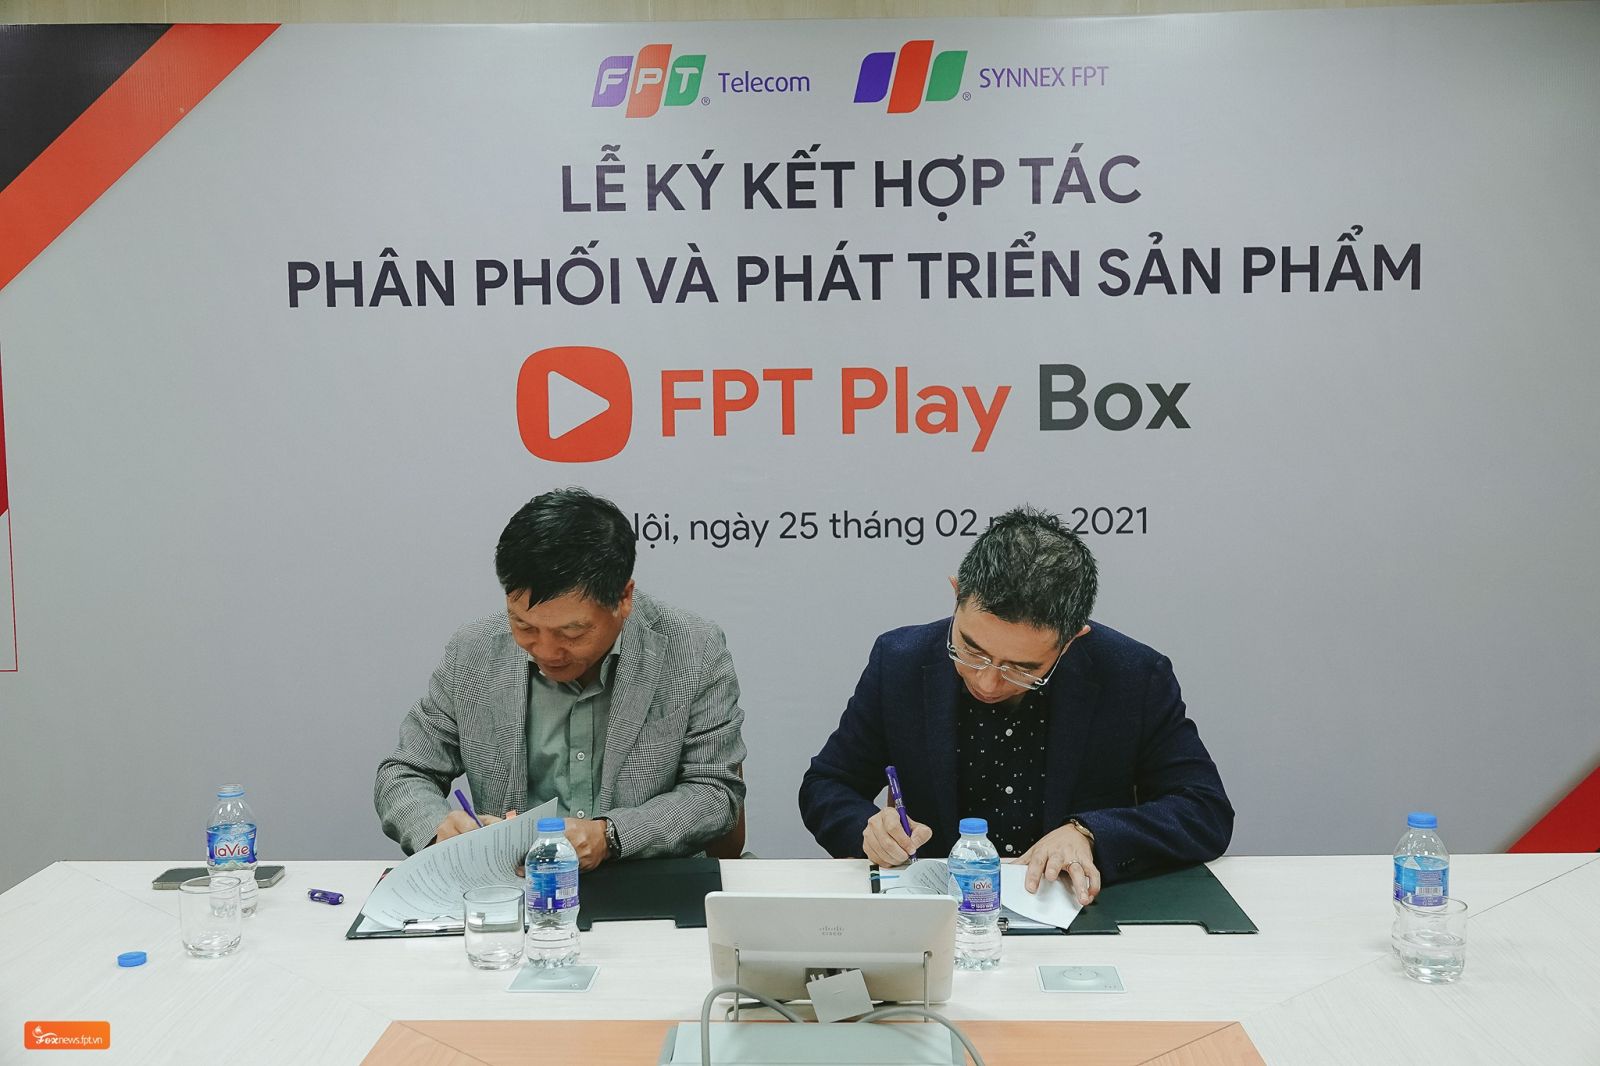 FPT Telecom bắt tay Synnex FPT phân phối và phát triển sản phẩm FPT Play Box